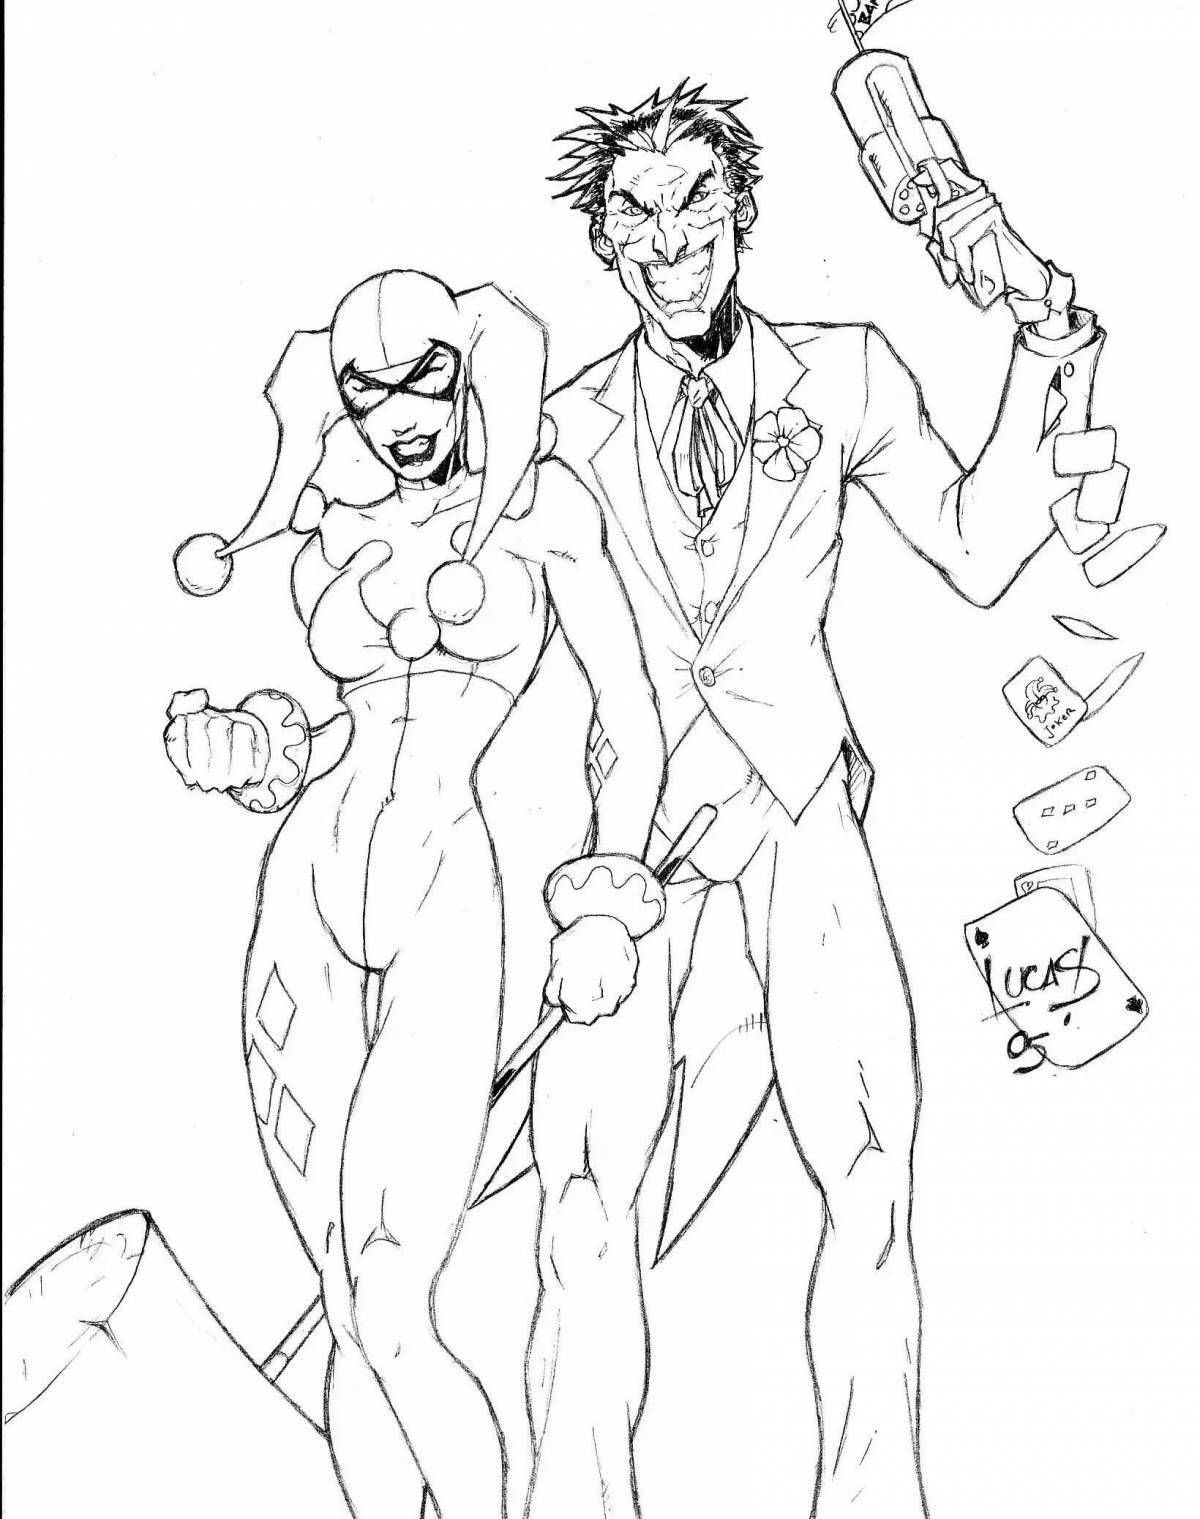 Joker and Harley Quinn #1